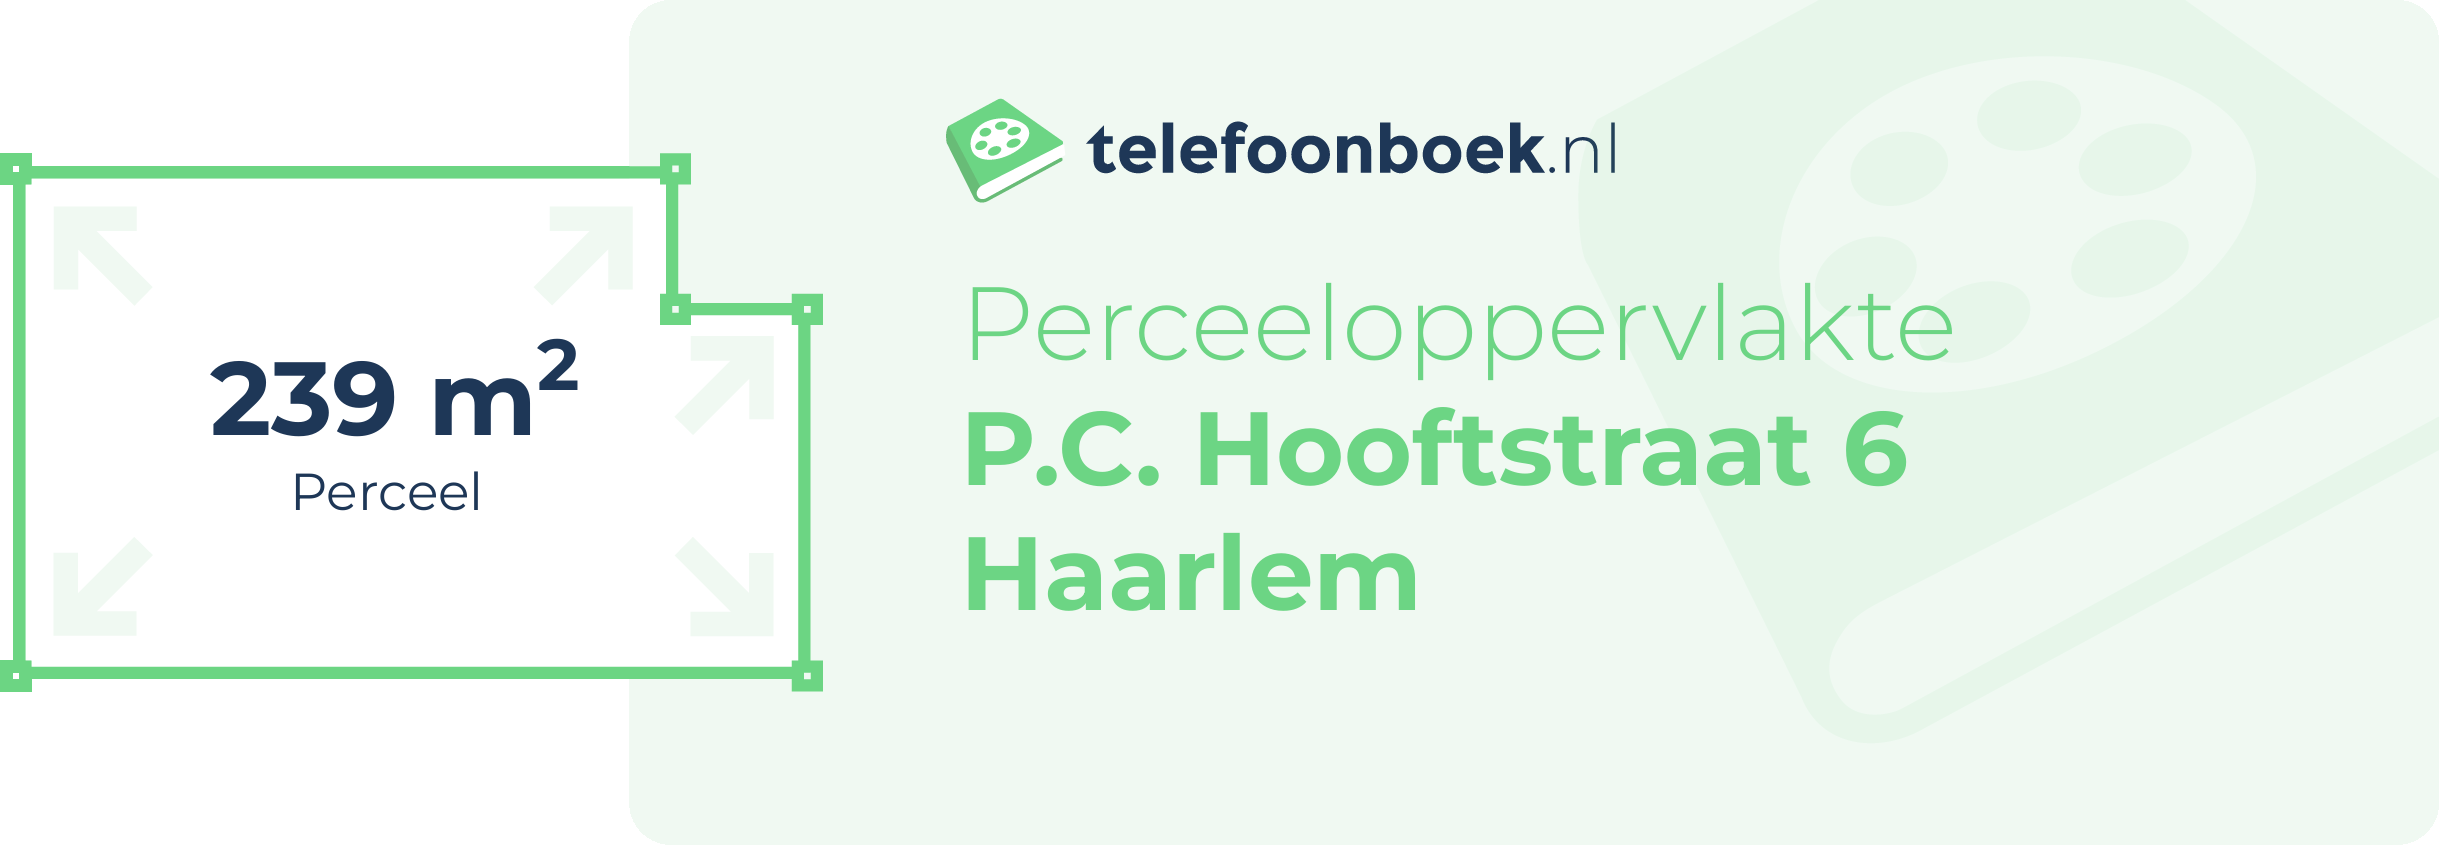 Perceeloppervlakte P.C. Hooftstraat 6 Haarlem